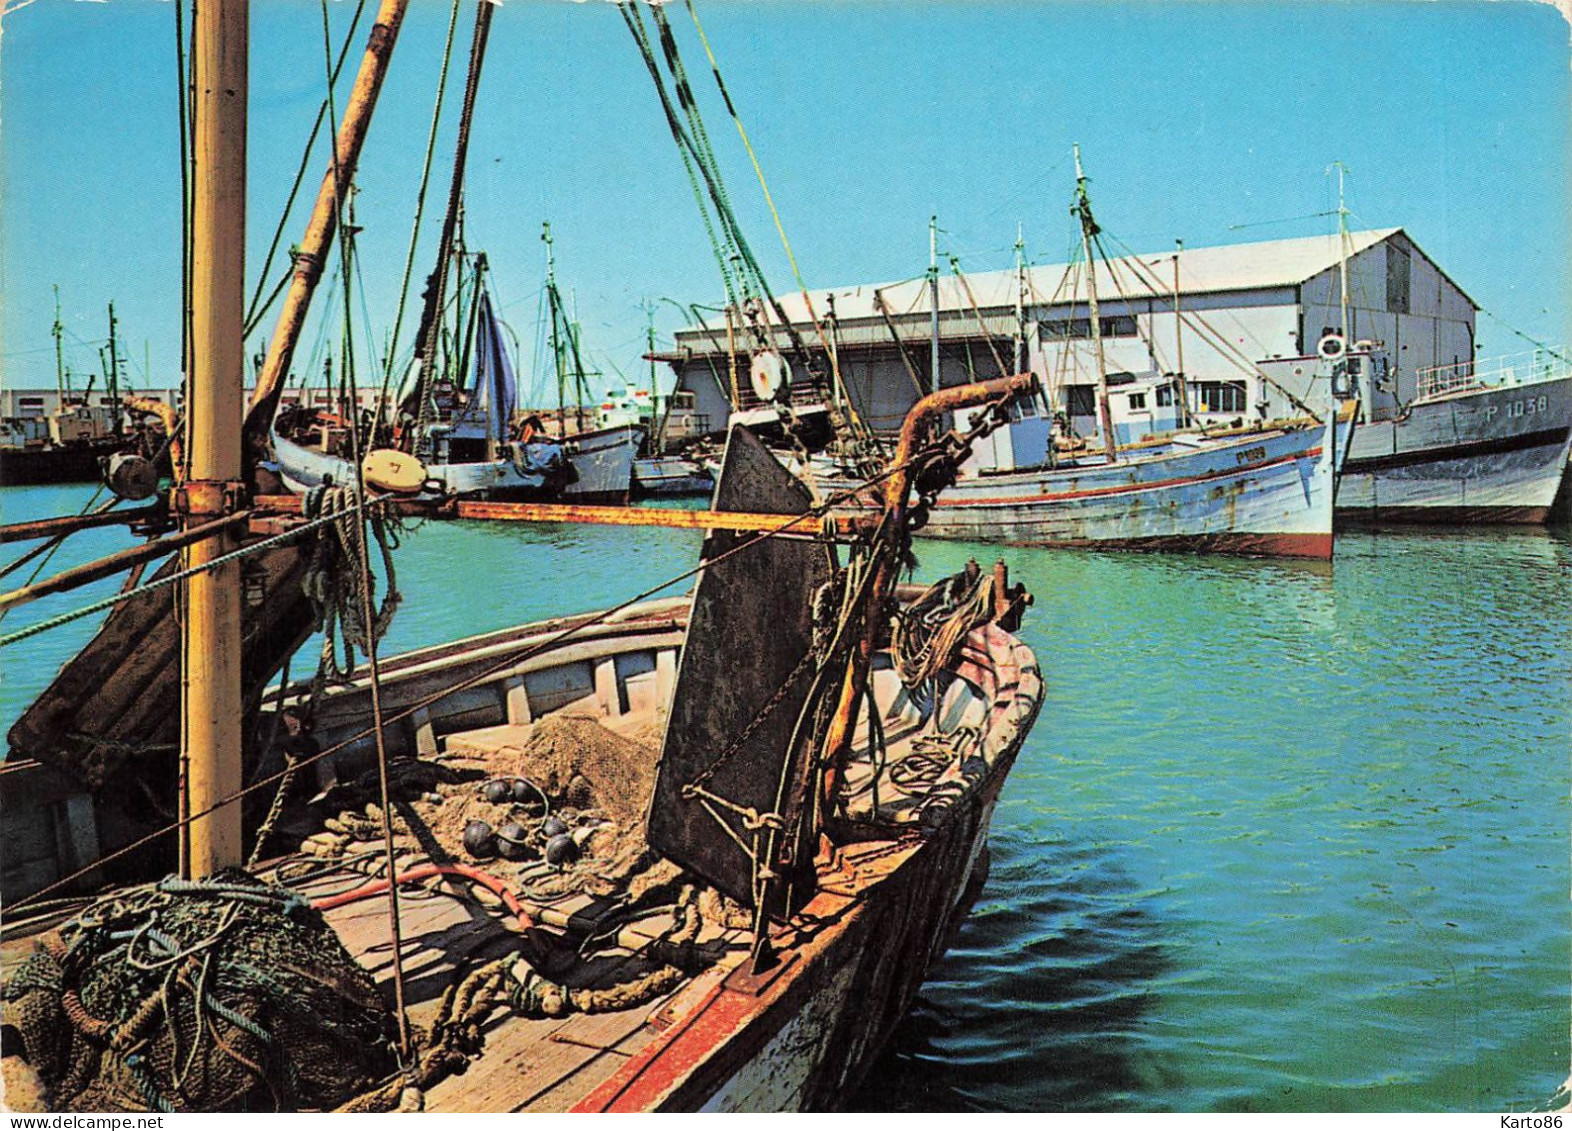 Port La Nouvelle * Le Golfe Du Lion * Bateaux De Pêche Sur Le Canal - Port La Nouvelle